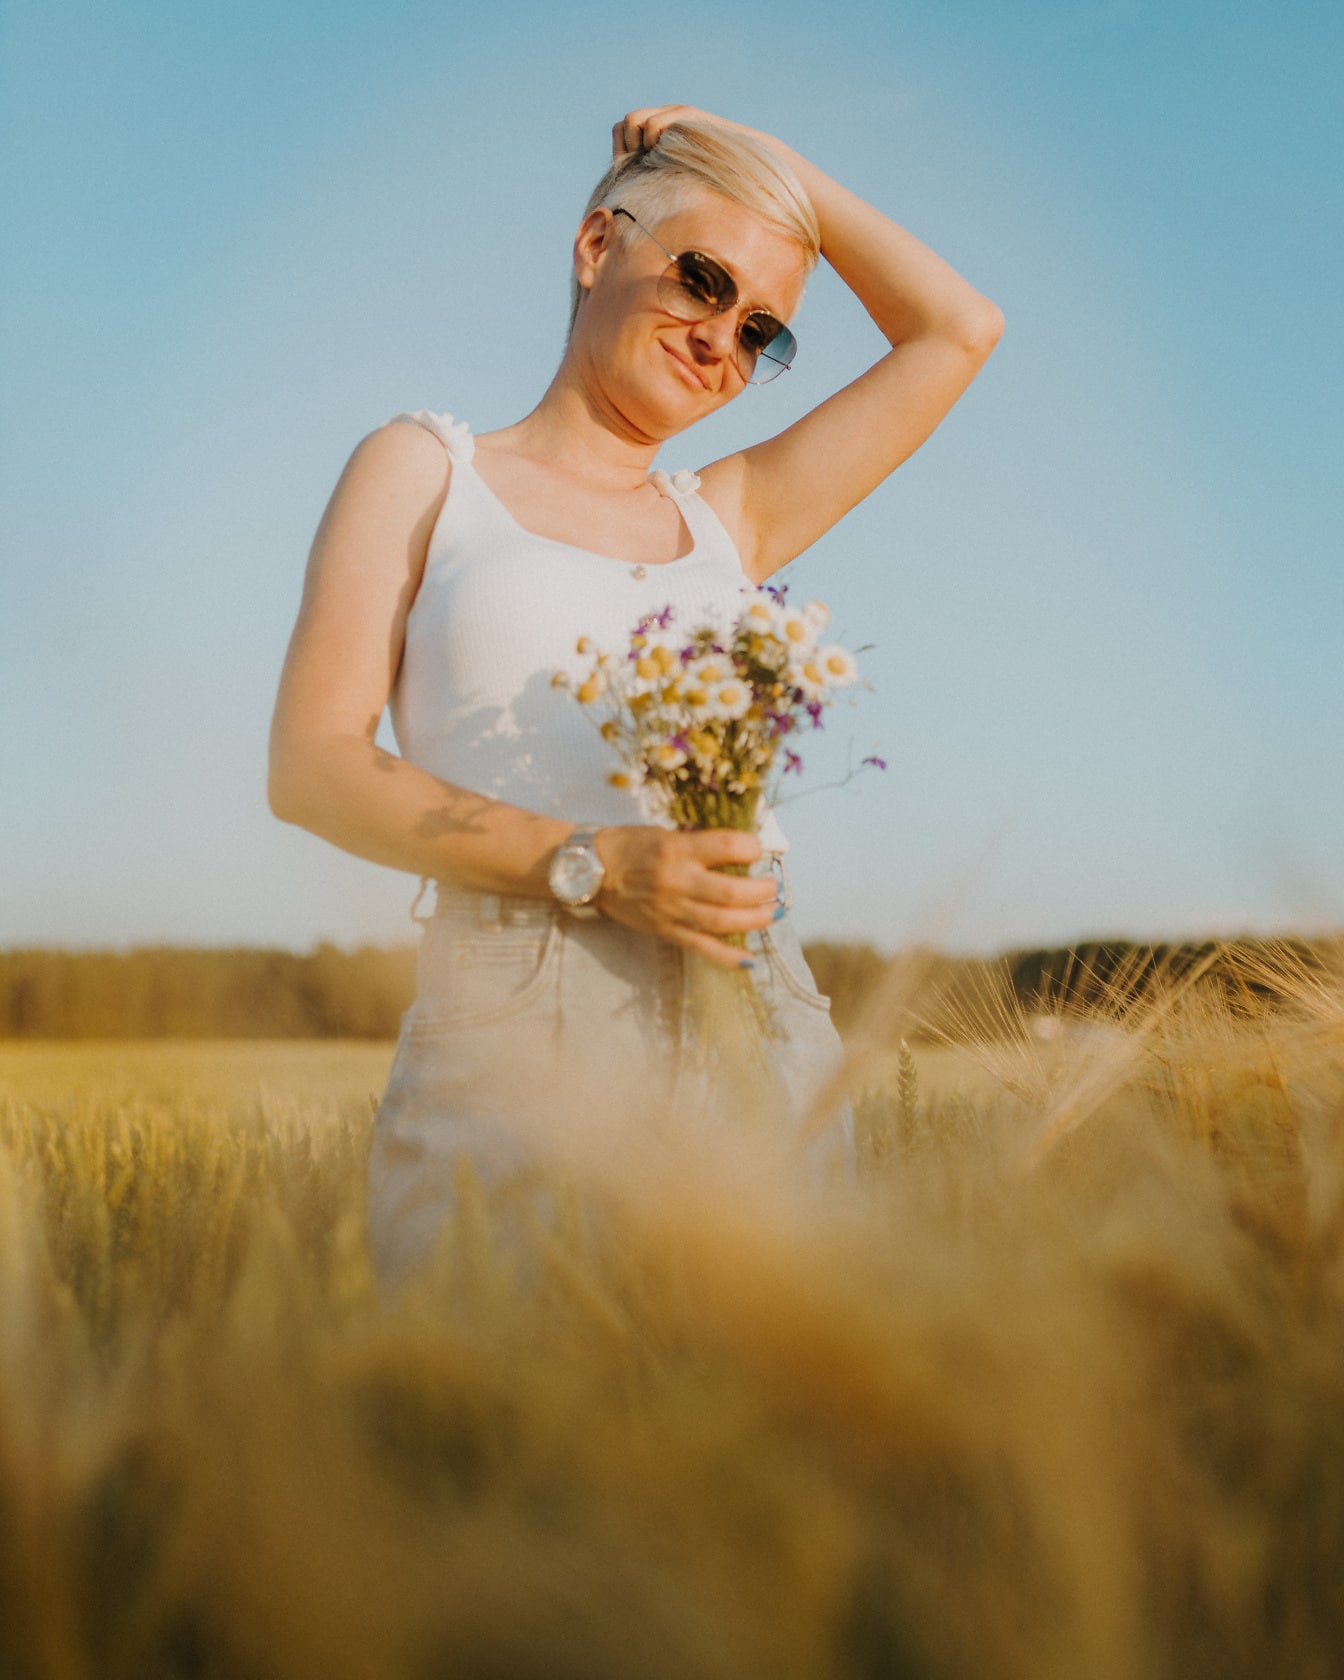 Người phụ nữ lộng lẫy trong chiếc áo sơ mi trắng với những bông hoa tạo dáng trên cánh đồng lúa mì